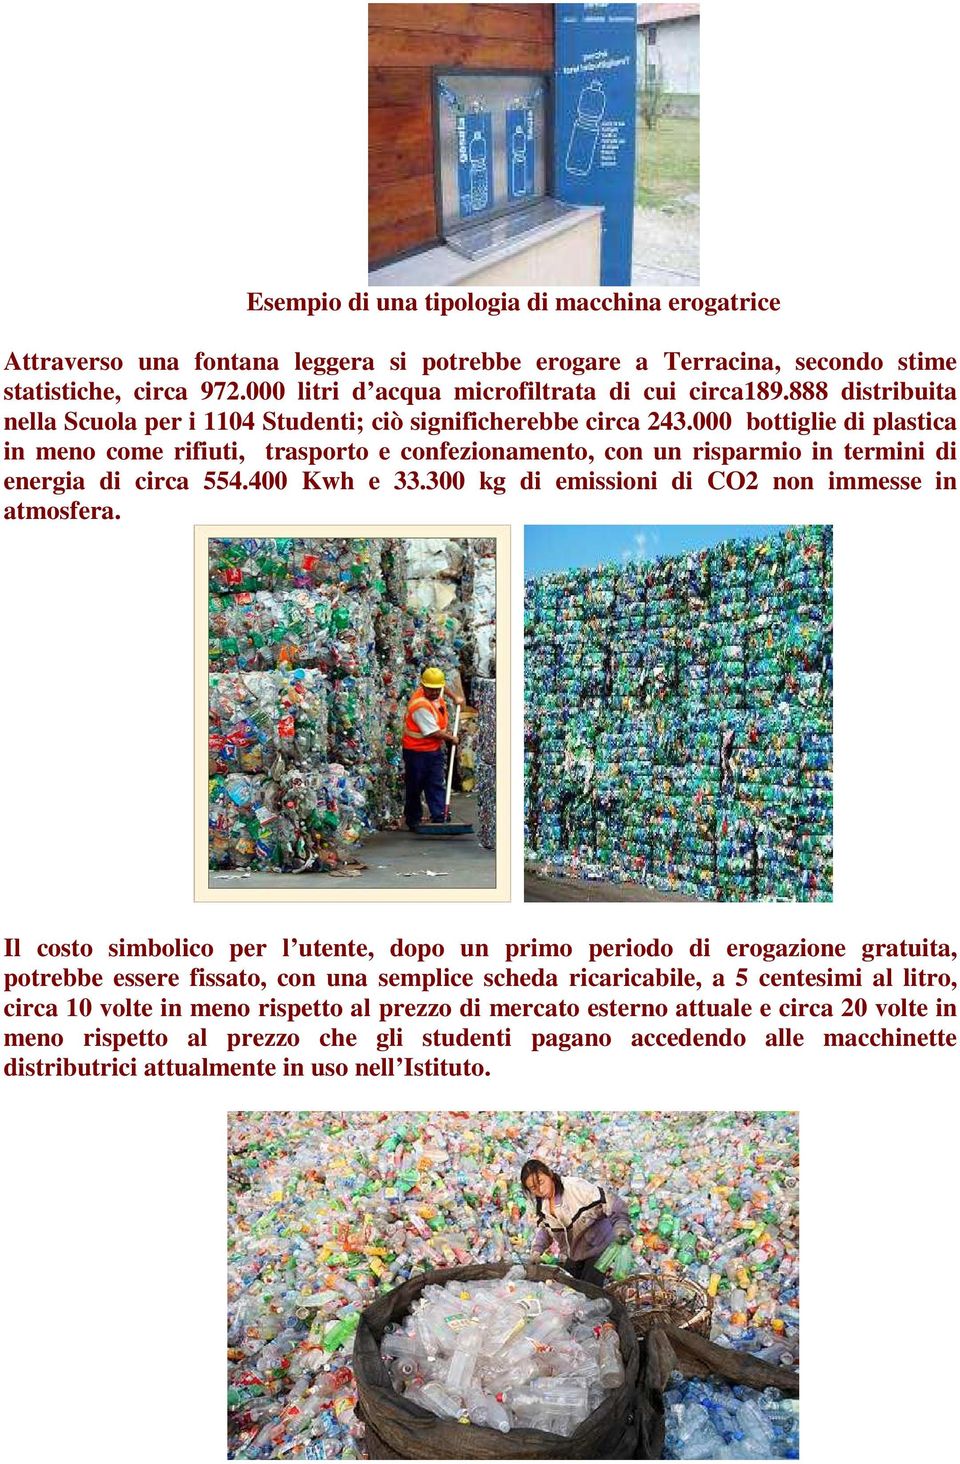 000 bottiglie di plastica in meno come rifiuti, trasporto e confezionamento, con un risparmio in termini di energia di circa 554.400 Kwh e 33.300 kg di emissioni di CO2 non immesse in atmosfera.